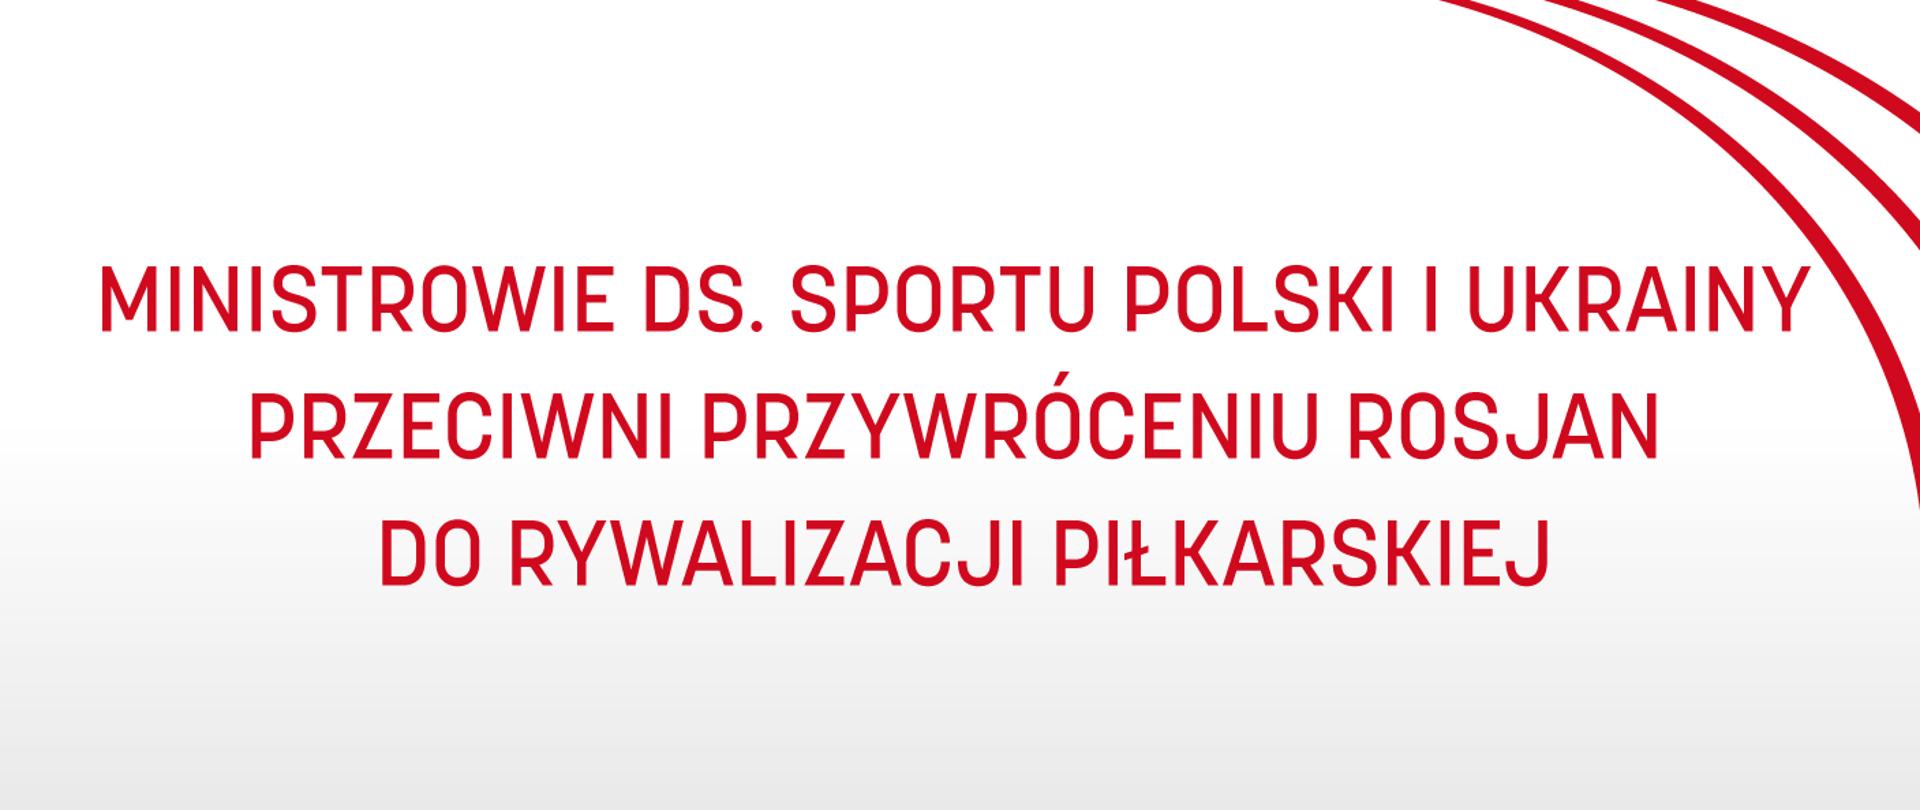 Grafika o białym tle, na którym - w prawym górnym rogu - znajdują się trzy łuki, zaś po środku napis „Ministrowie ds. sportu Polski i Ukrainy przeciwni przywróceniu Rosjan do rywalizacji piłkarskiej”.